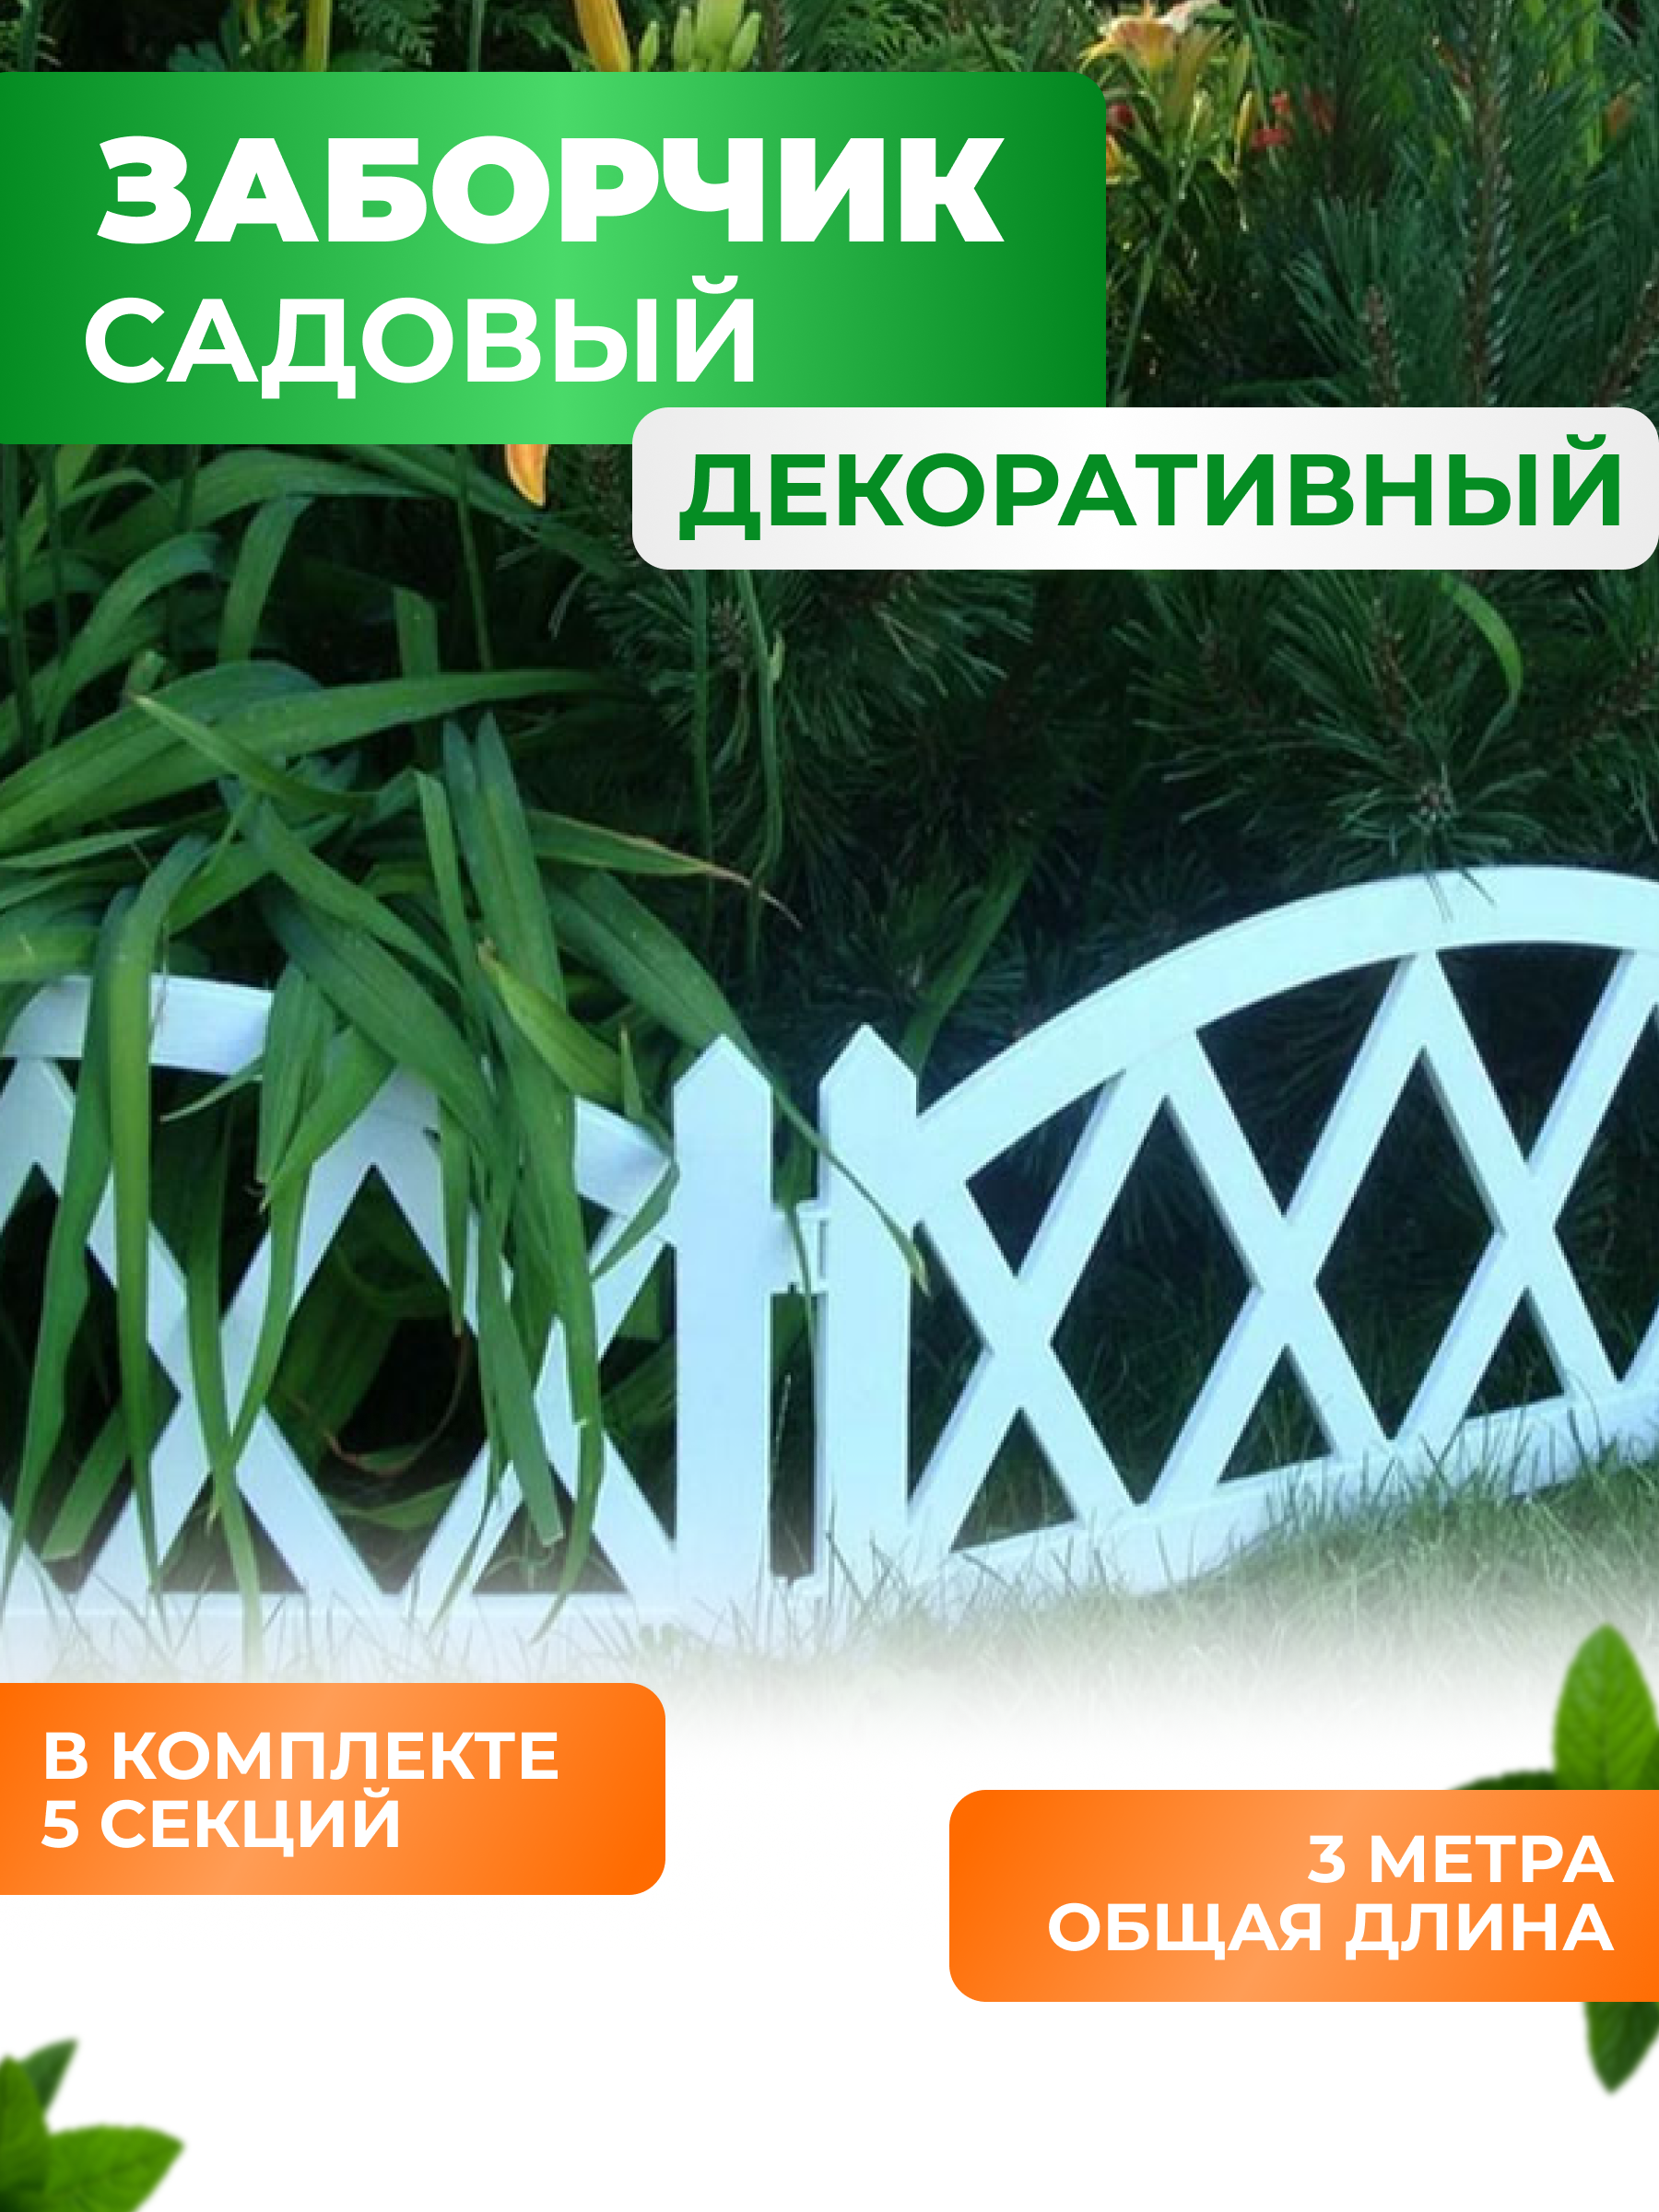 Садовый декоративный заборчик ГеоПластБорд высота 26 см, длина 300 см, белый 50013